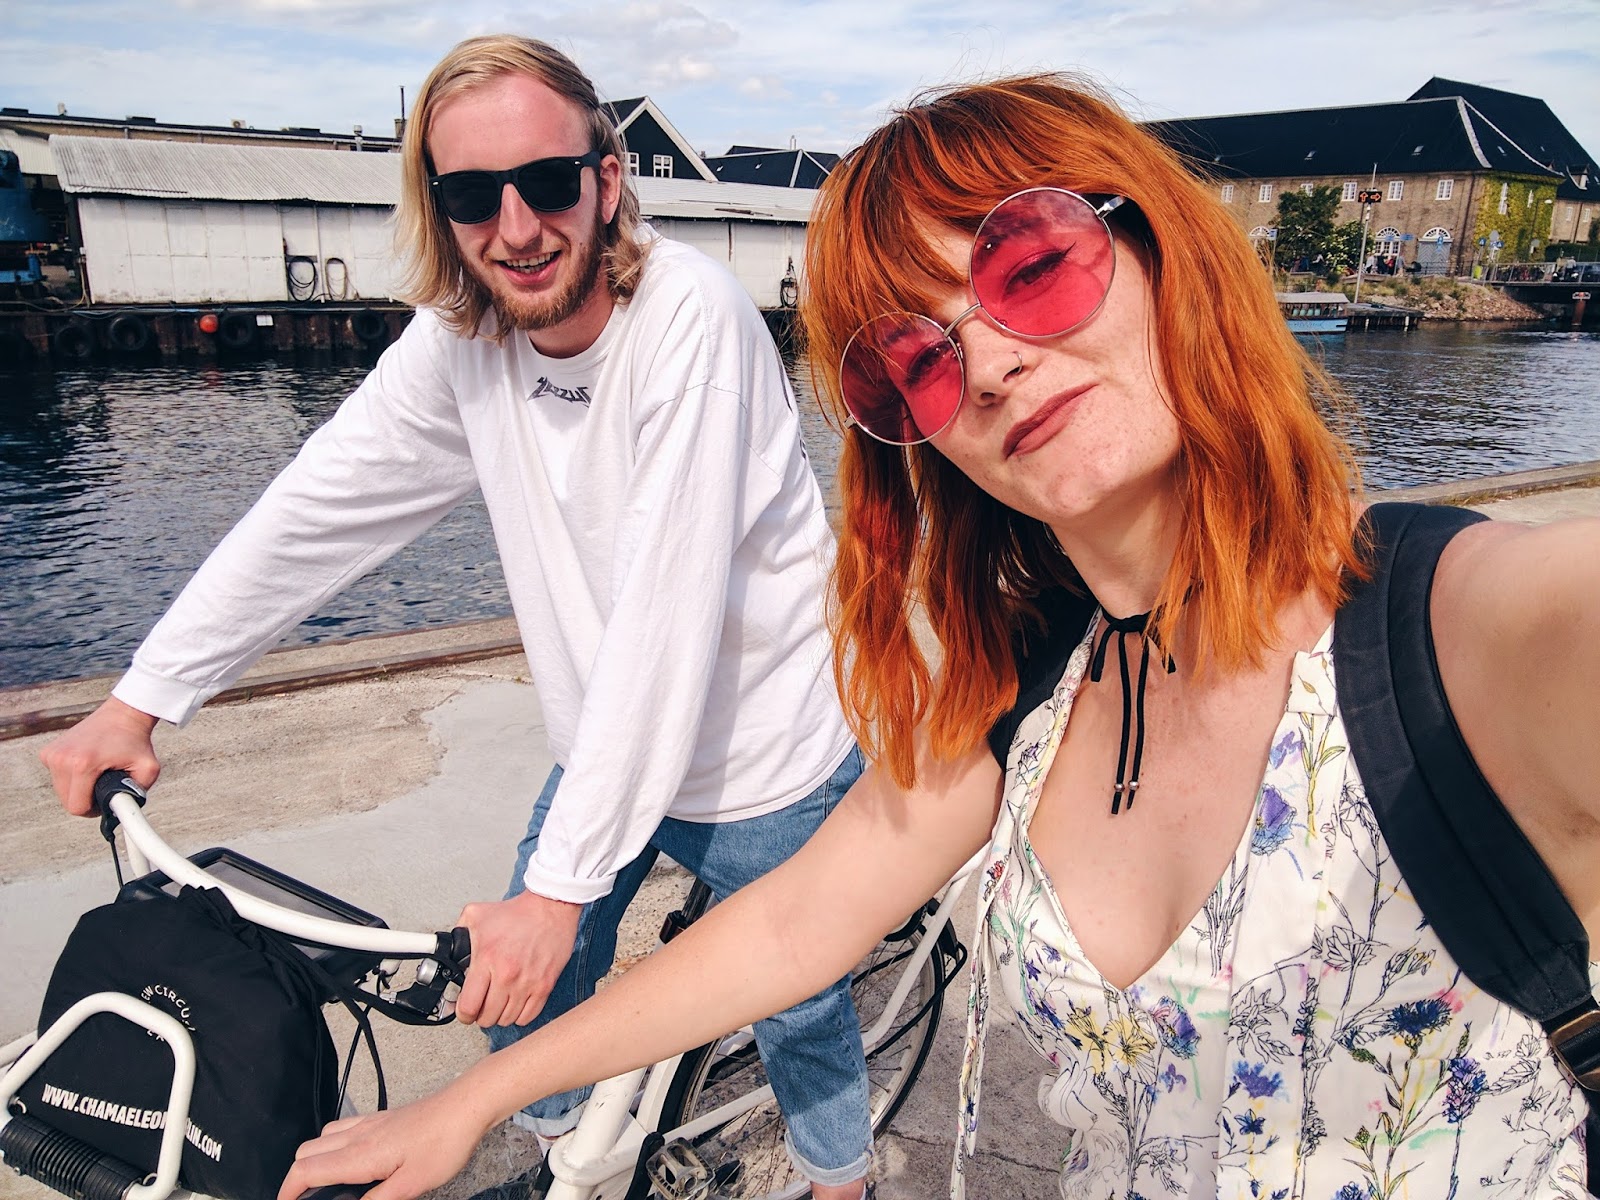 Renting bikes - How To Spend 48 Hours In Copenhagen